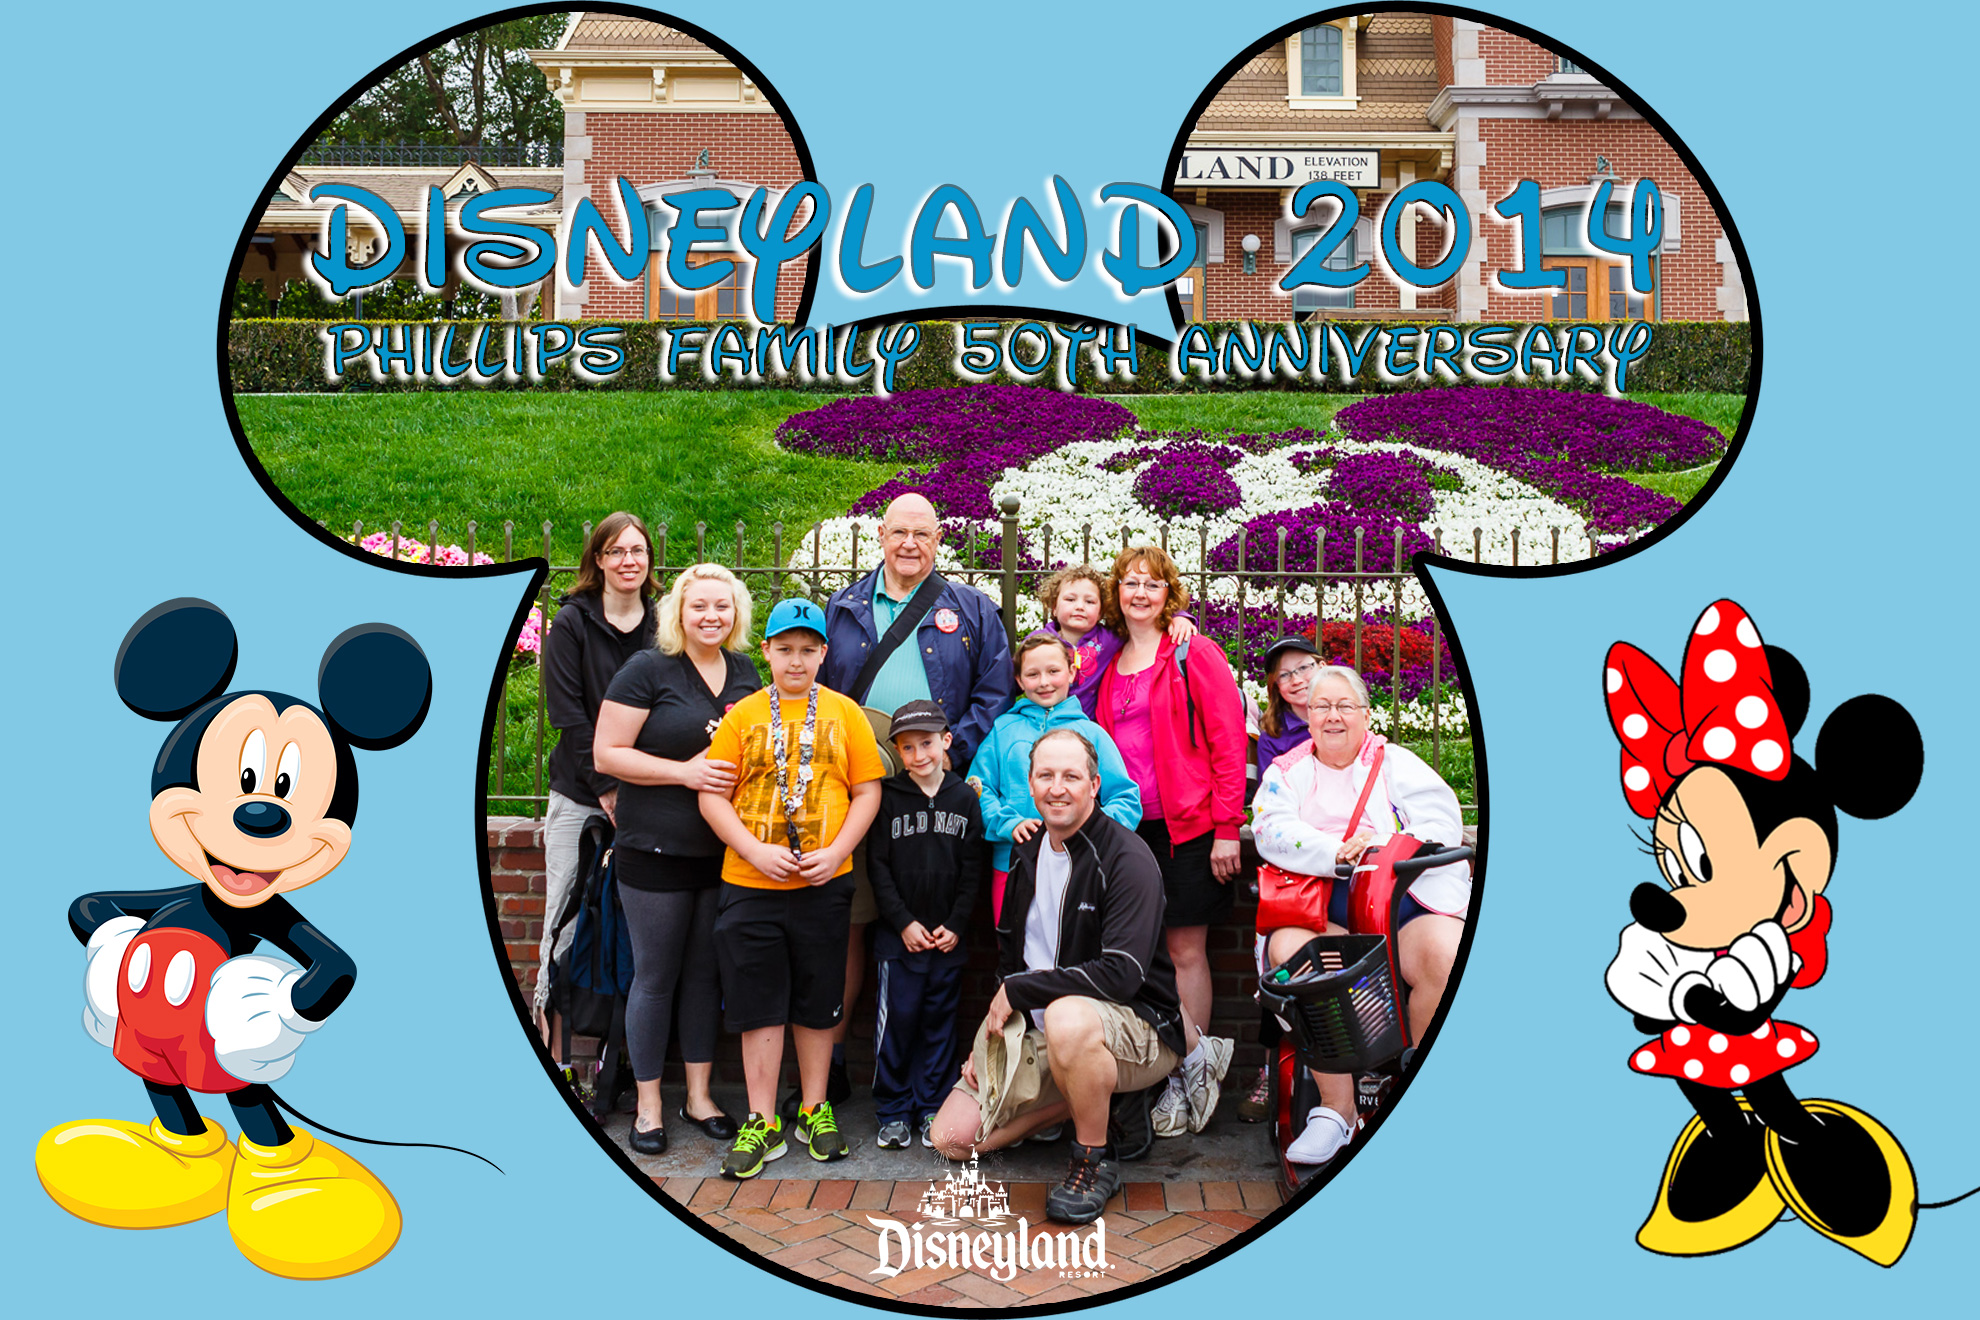 Disneyland 2014 - Phillips Family 50th Anniversary